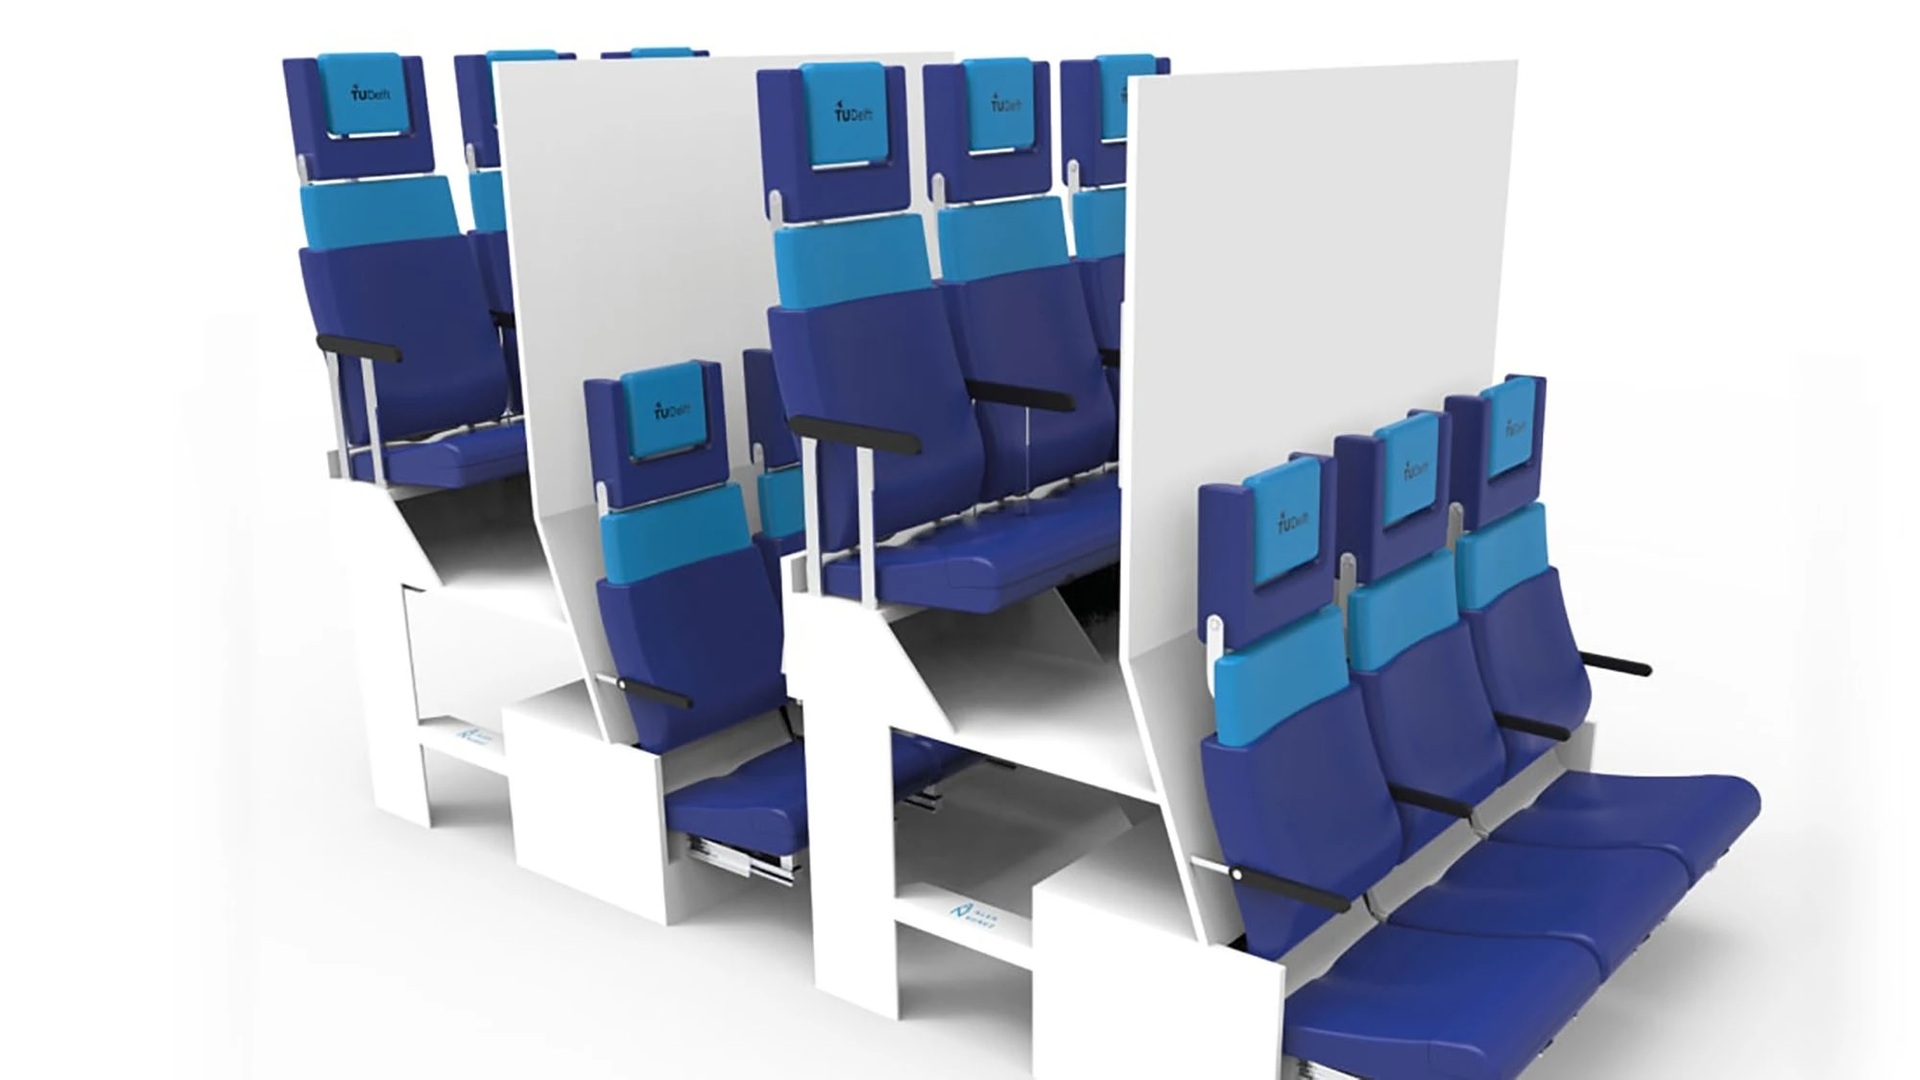 Thiết kế ghế 2 tầng cho khoang phổ thông máy bay của Alejandro Vicente đã gây ra nhiều tranh cãi. Ảnh: Crystal Cabin Awards